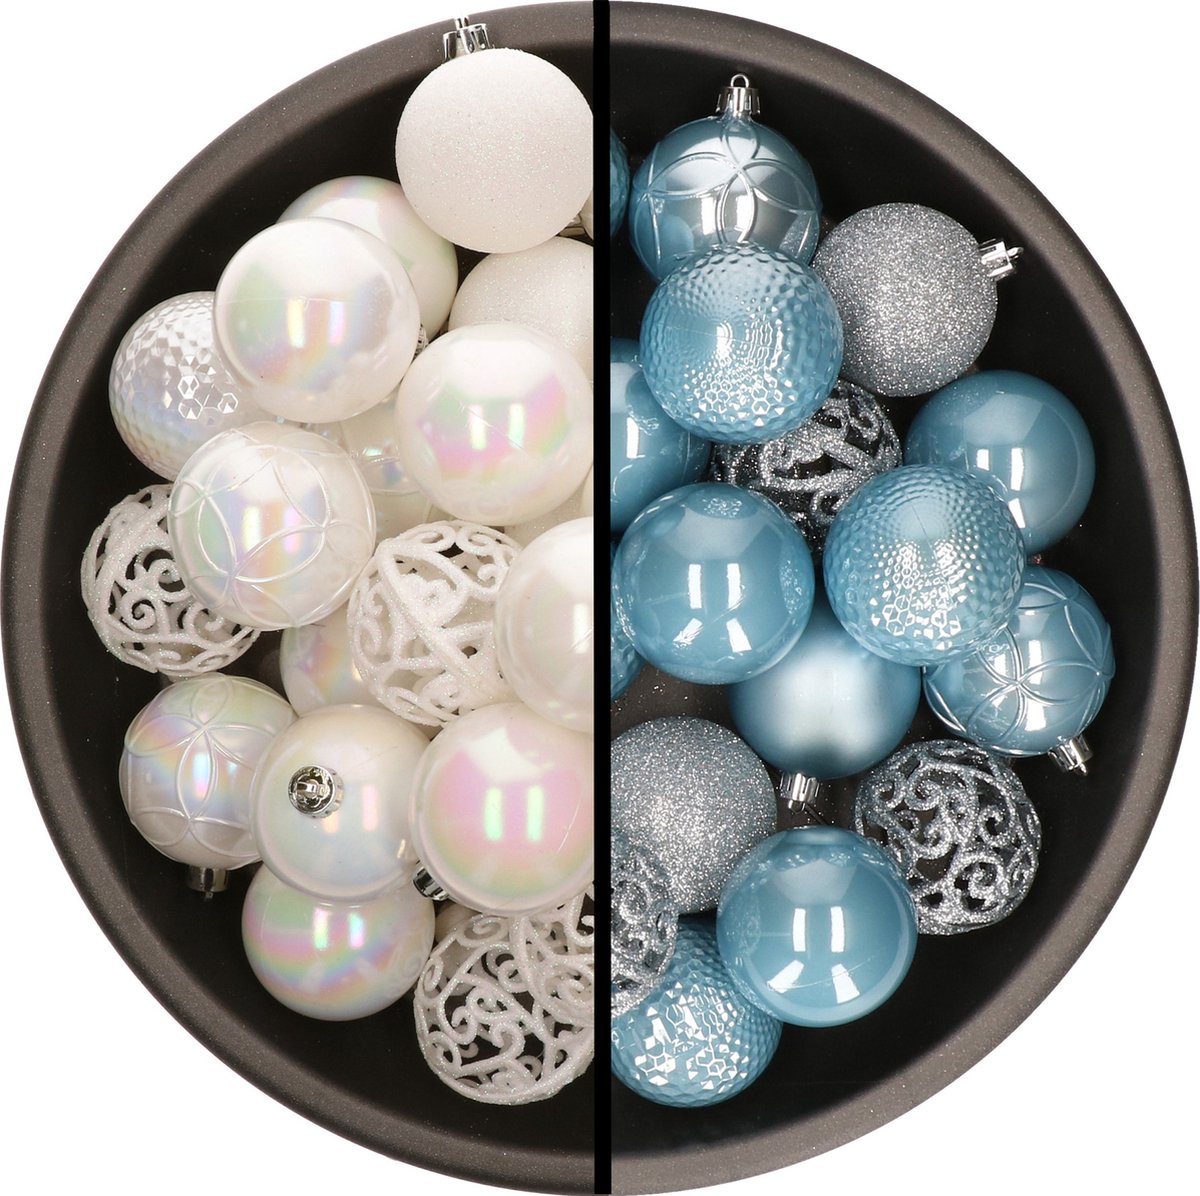 Kerstballen - 74x stuks - parelmoer wit en lichtblauw - 6 cm - kunststof